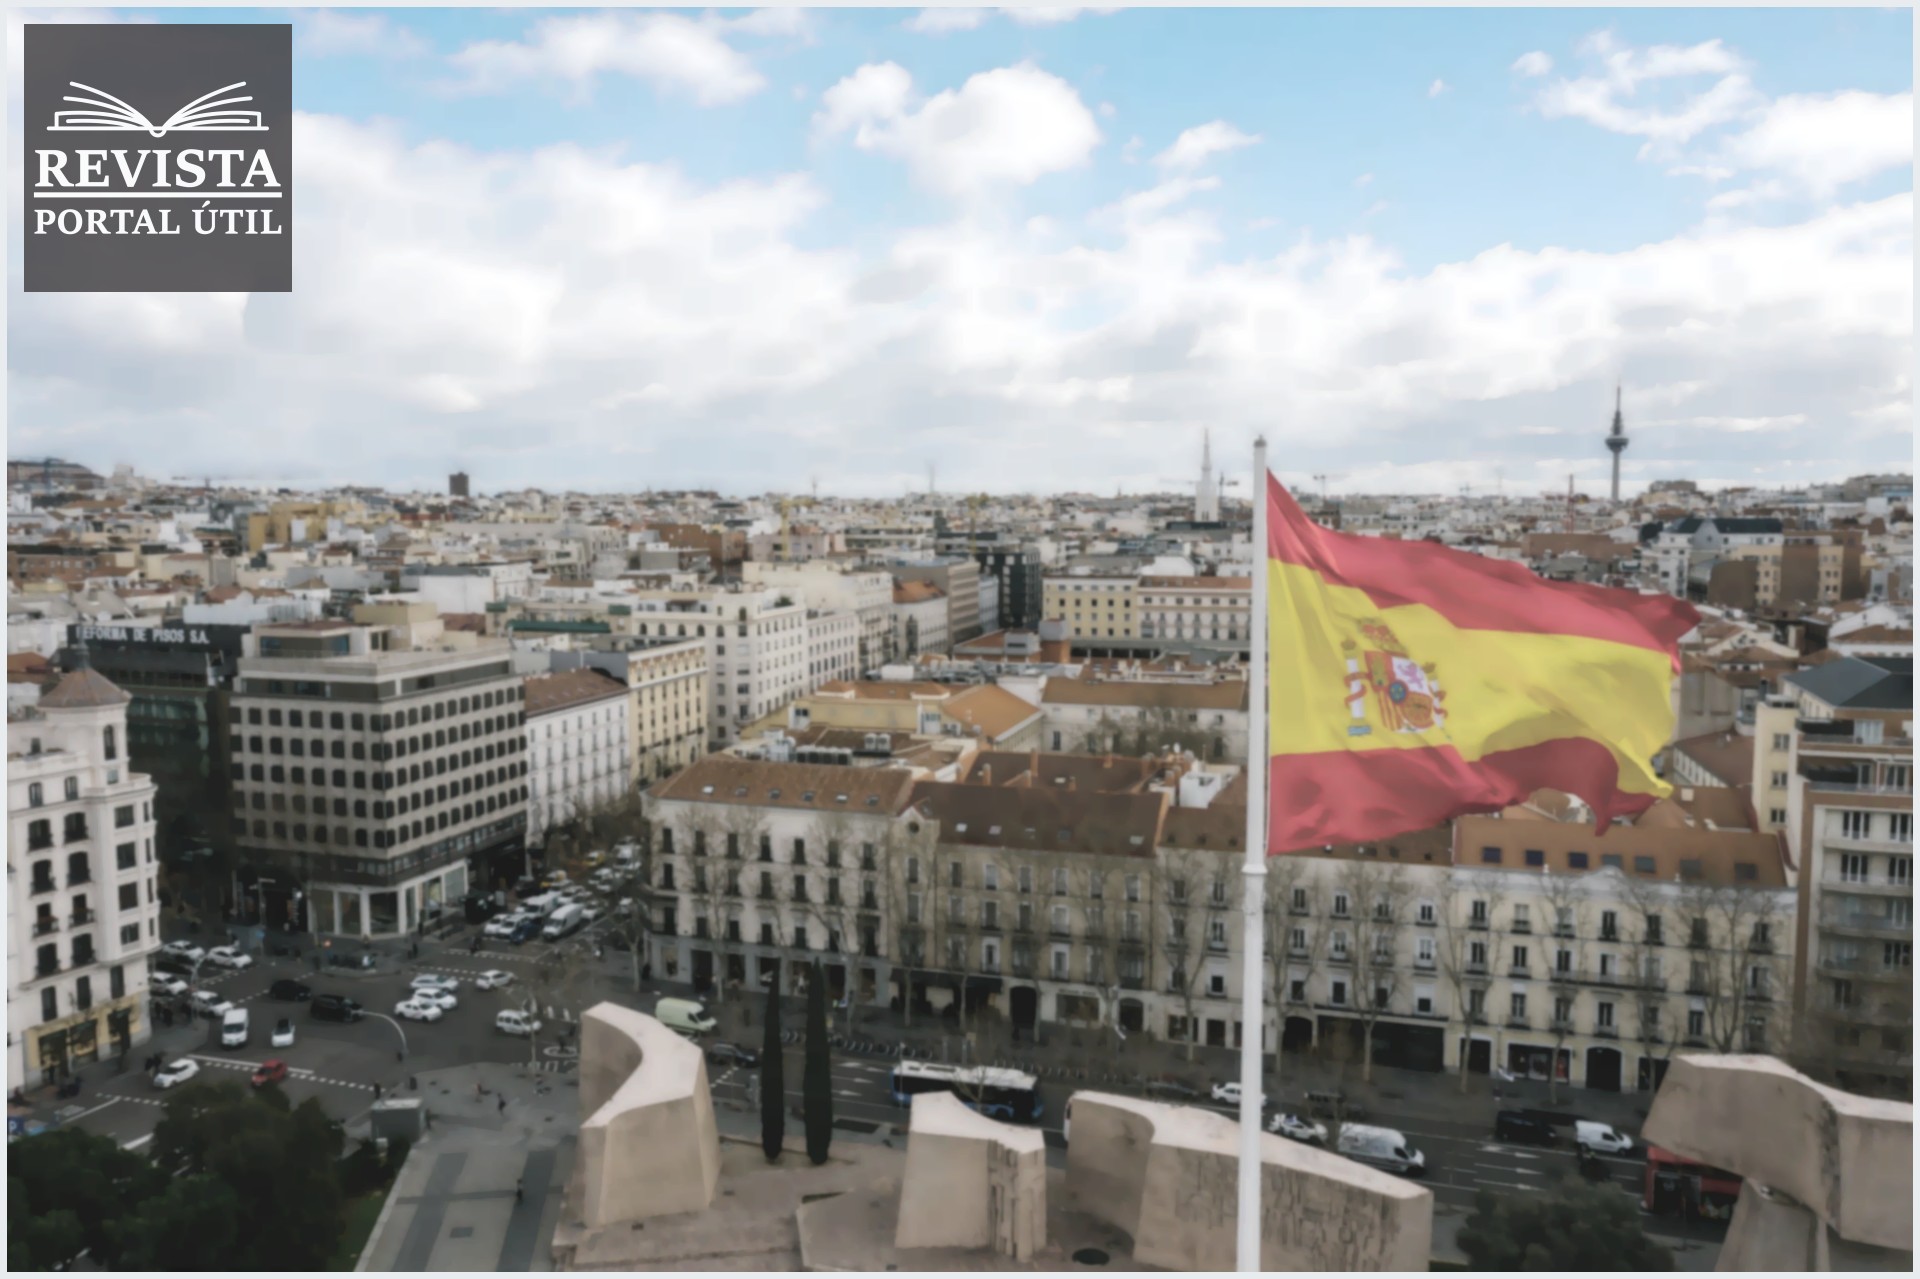 Um bairro da Espanha com a bandeira espanhola